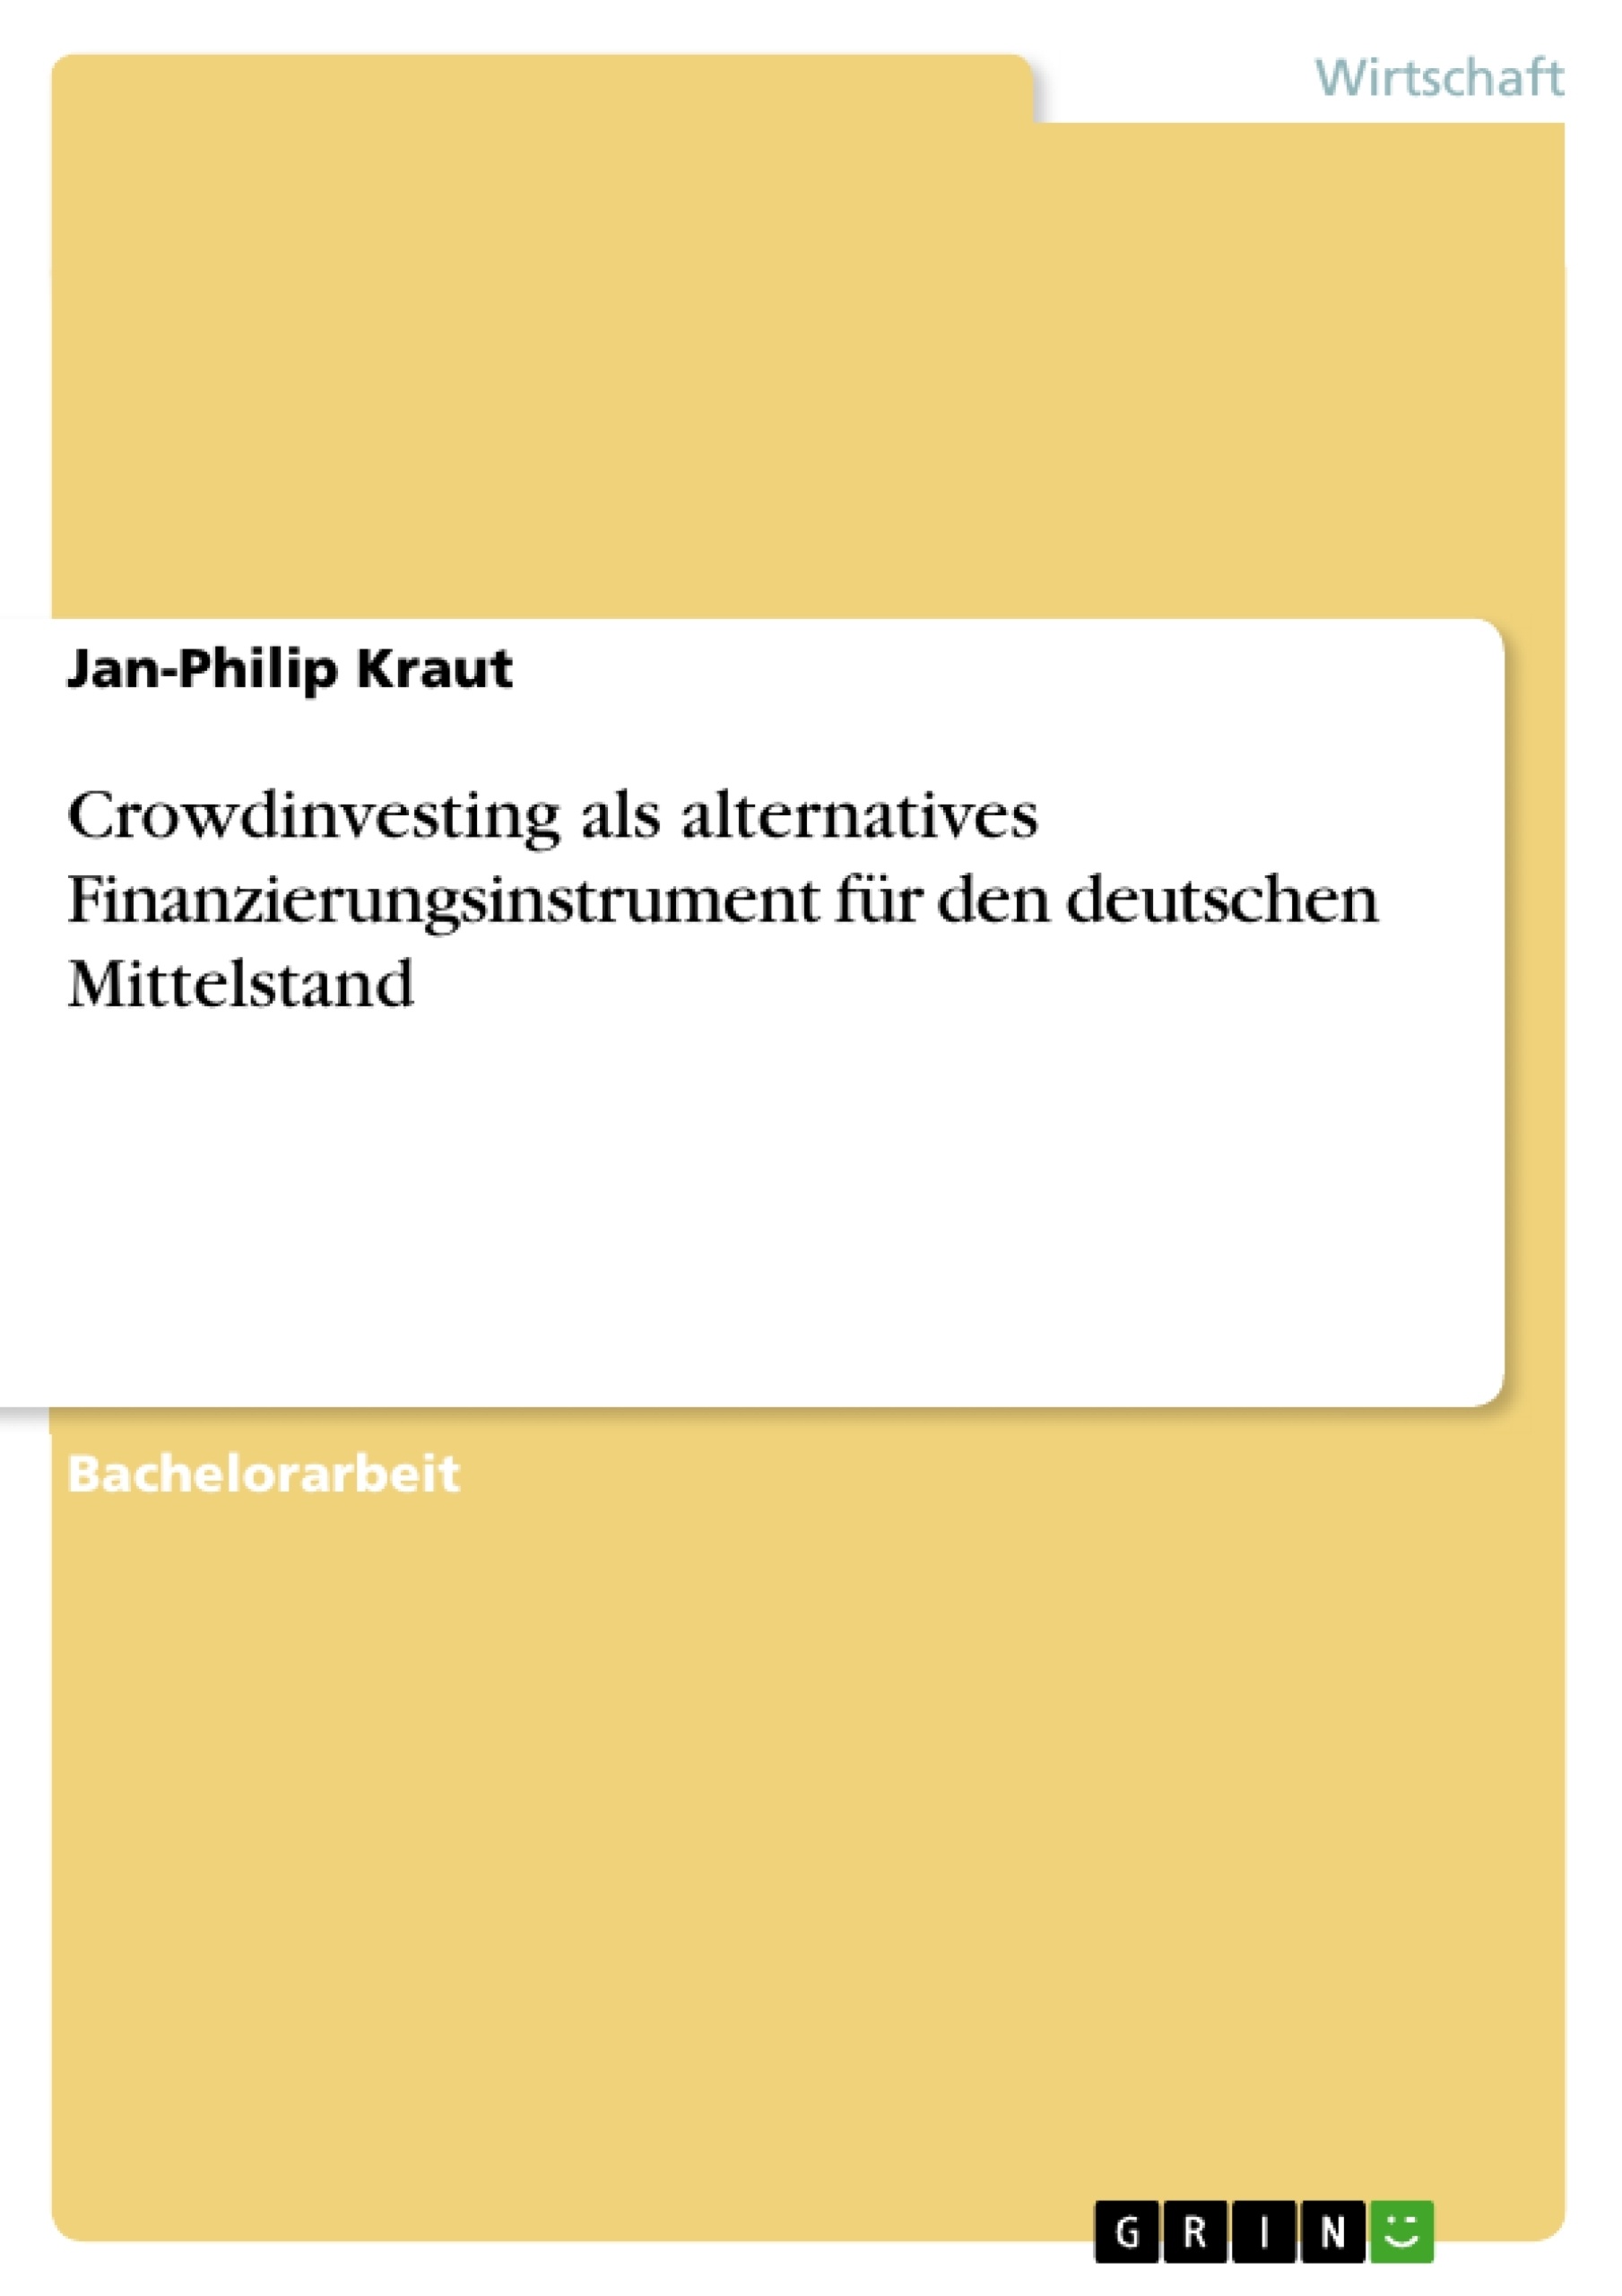 Título: Crowdinvesting als alternatives Finanzierungsinstrument für den deutschen Mittelstand